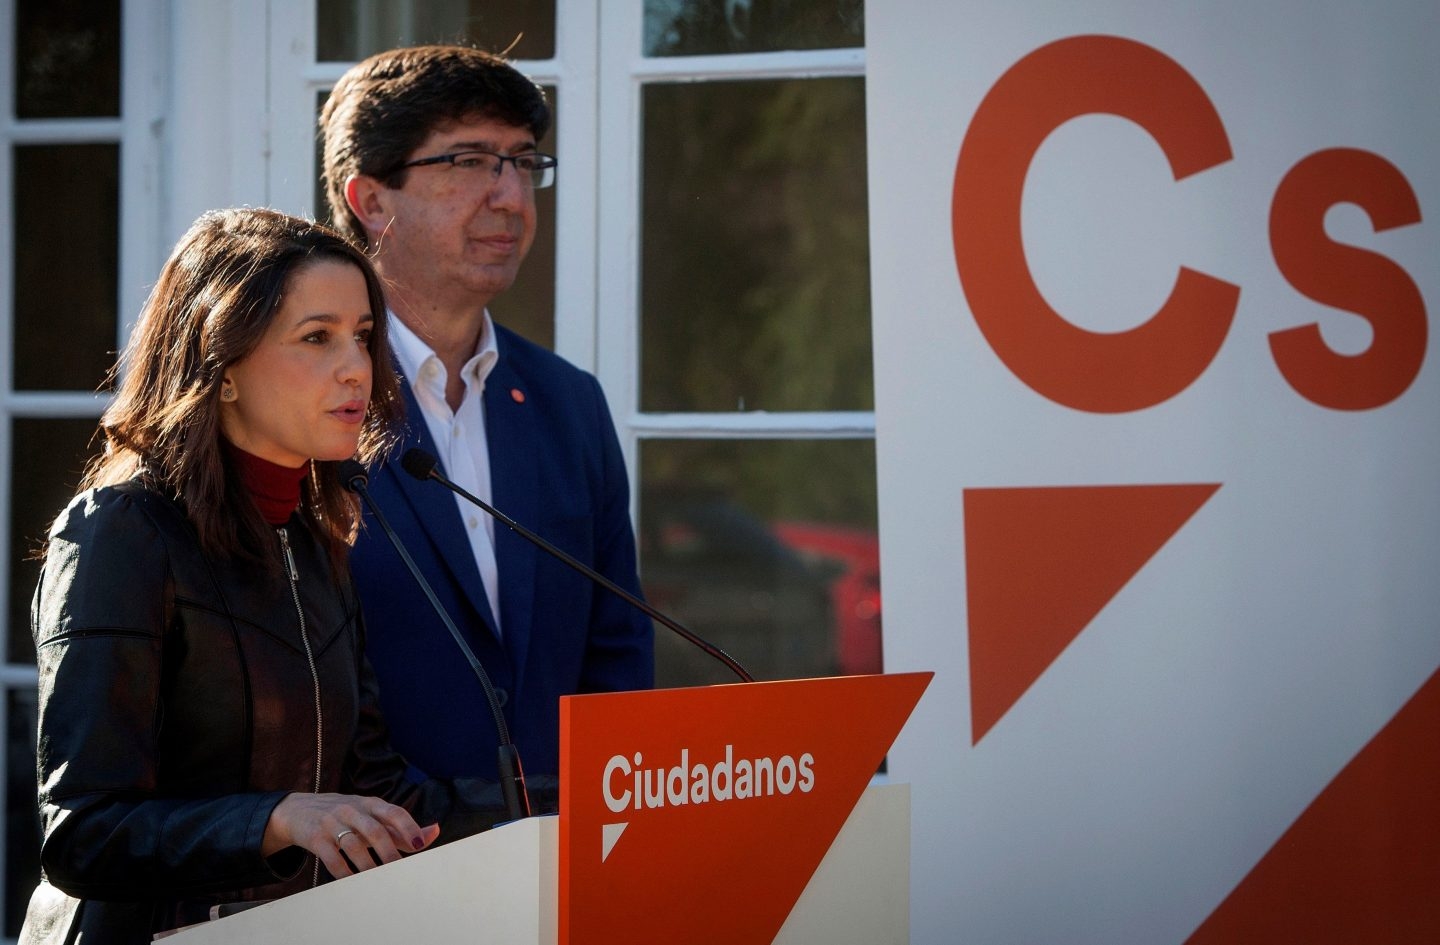 La líder de Ciudadanos en Cataluña, Inés Arrimadas junto al presidente y portavoz del grupo parlamentario de Ciudadanos en Andalucía, Juan Marín.